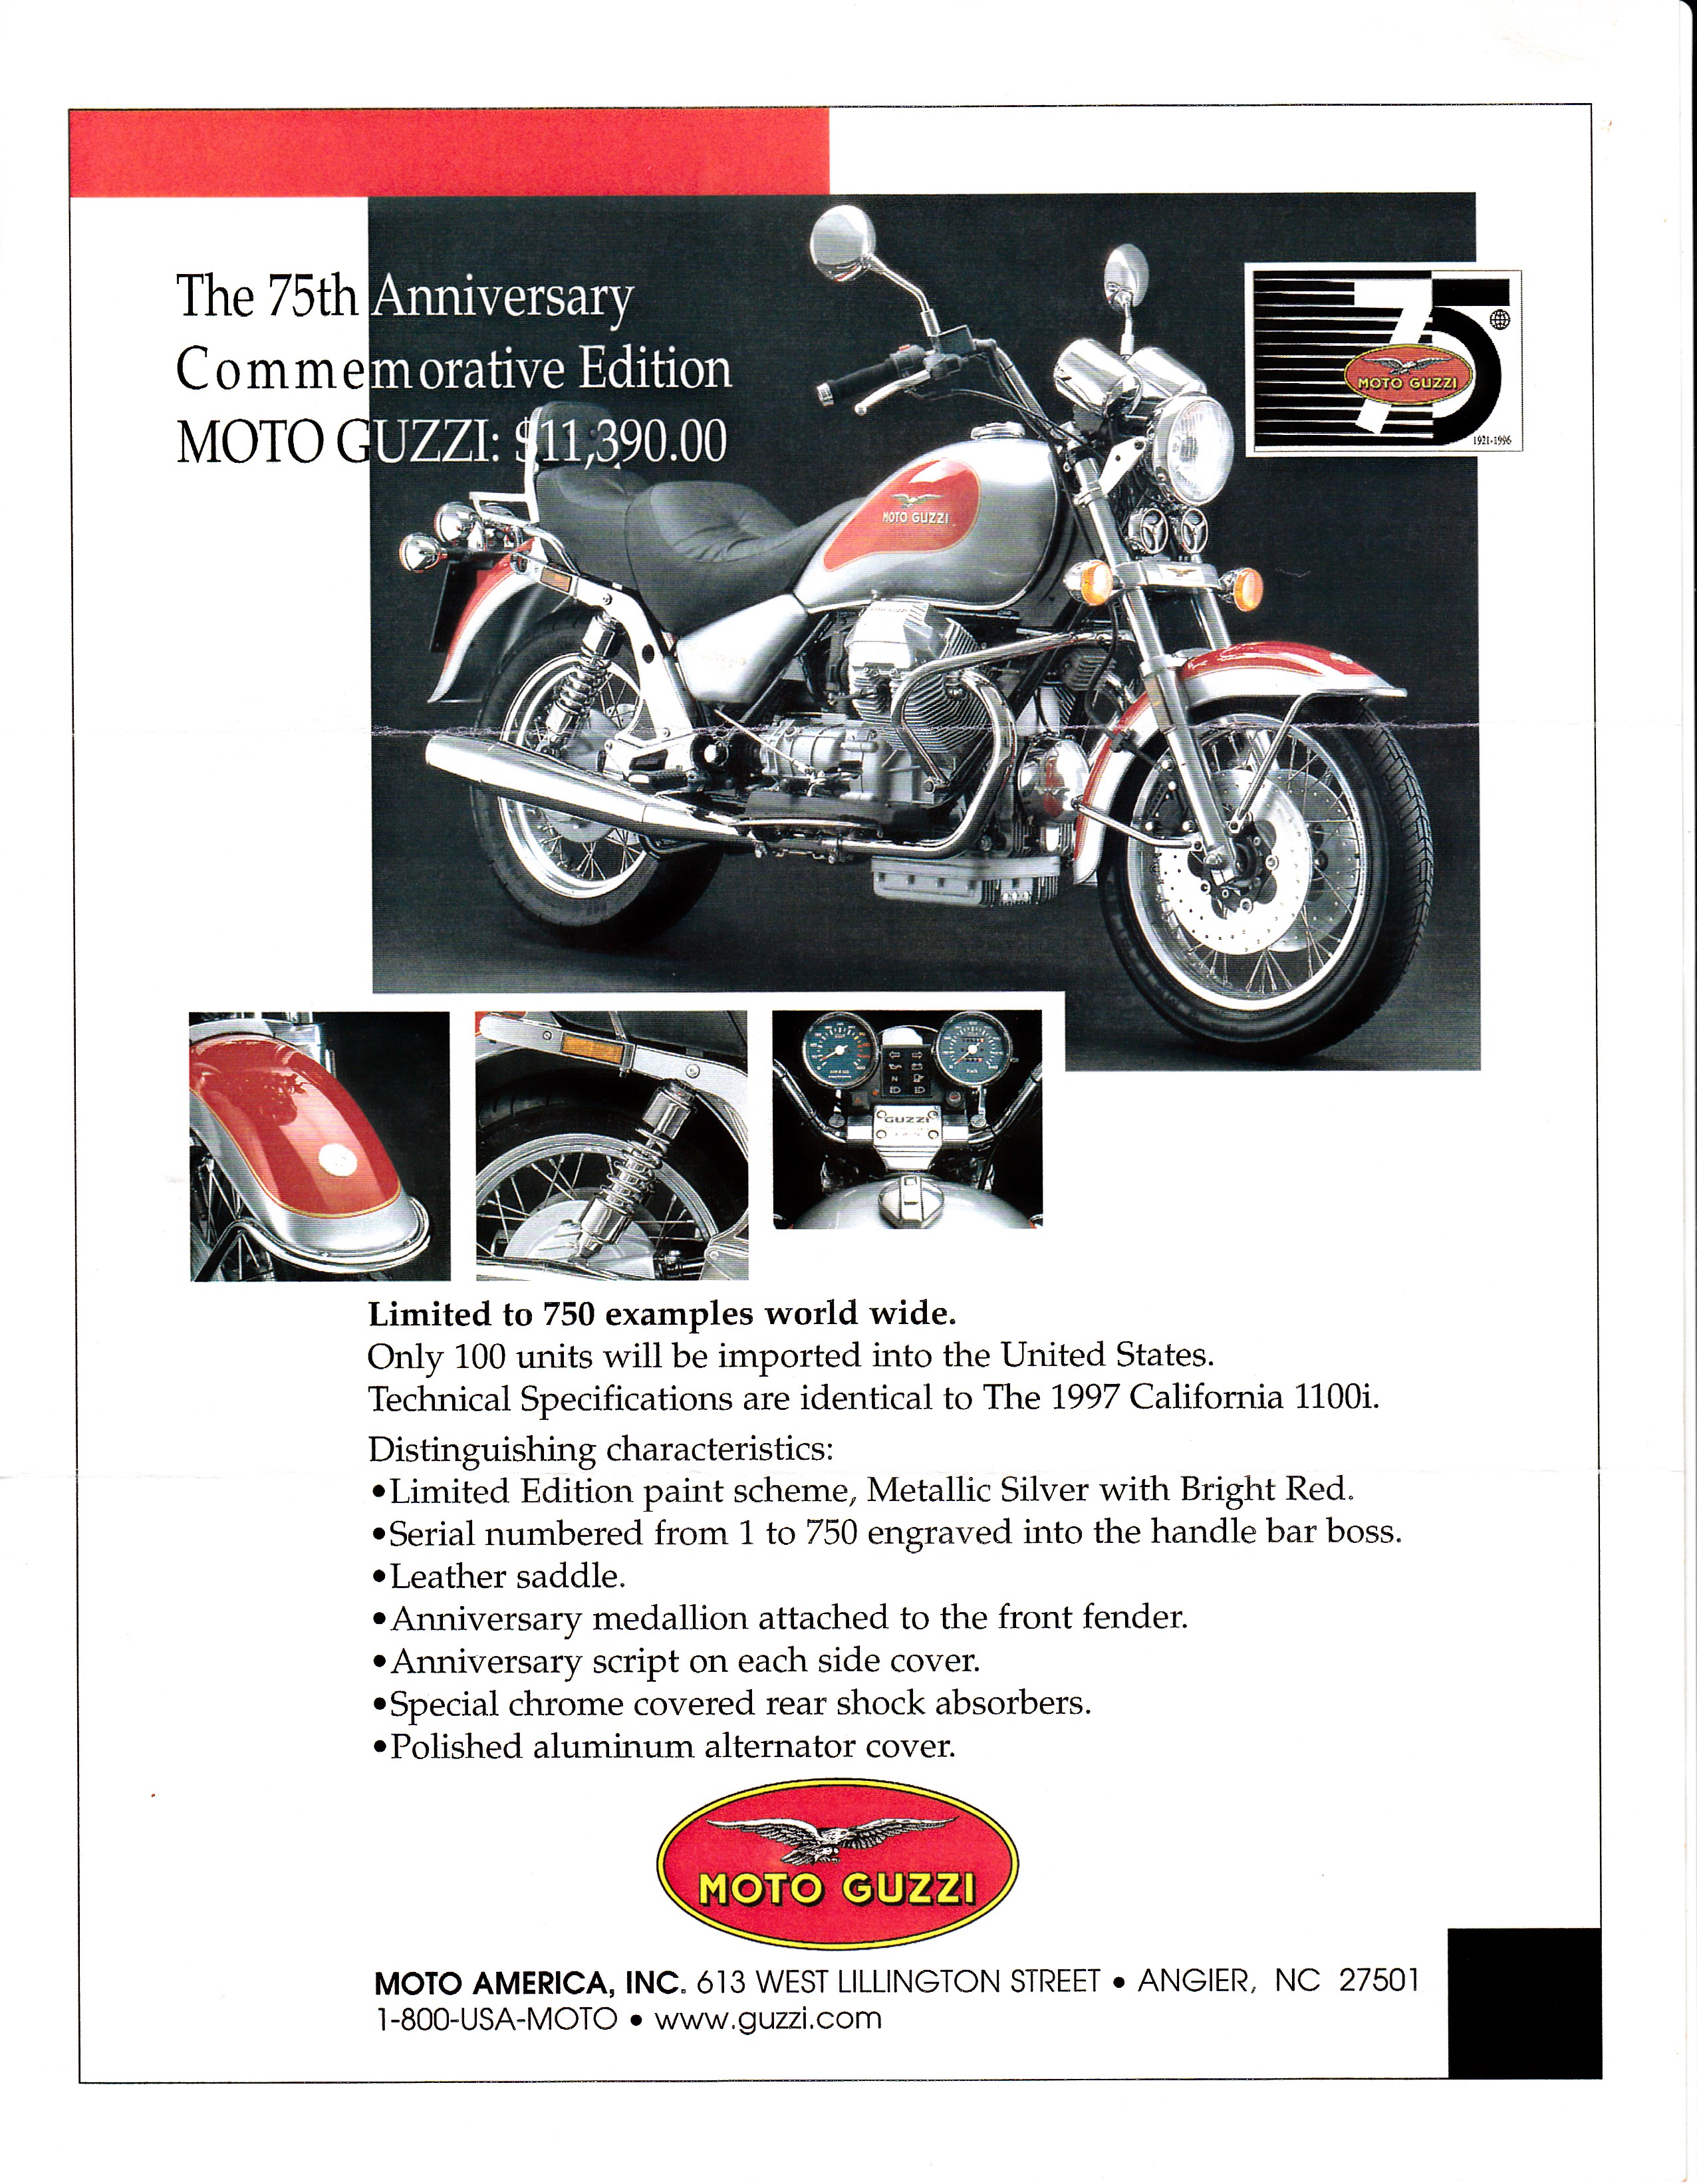 Brochure - Moto Guzzi 75th anniversary commemorative edition